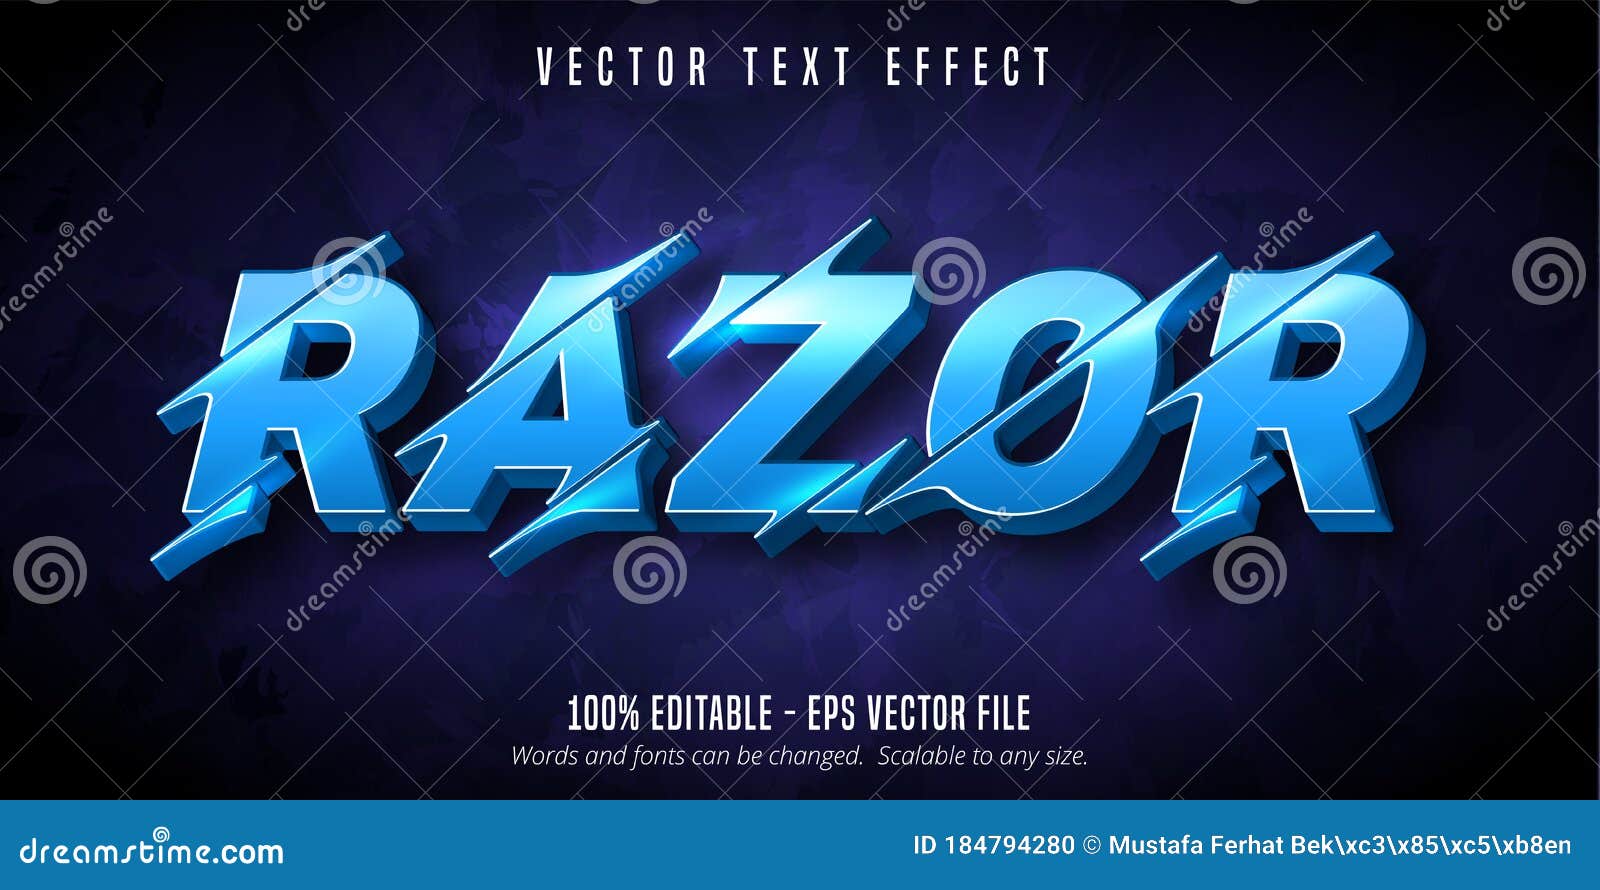 razor text, cutout style editable text effect